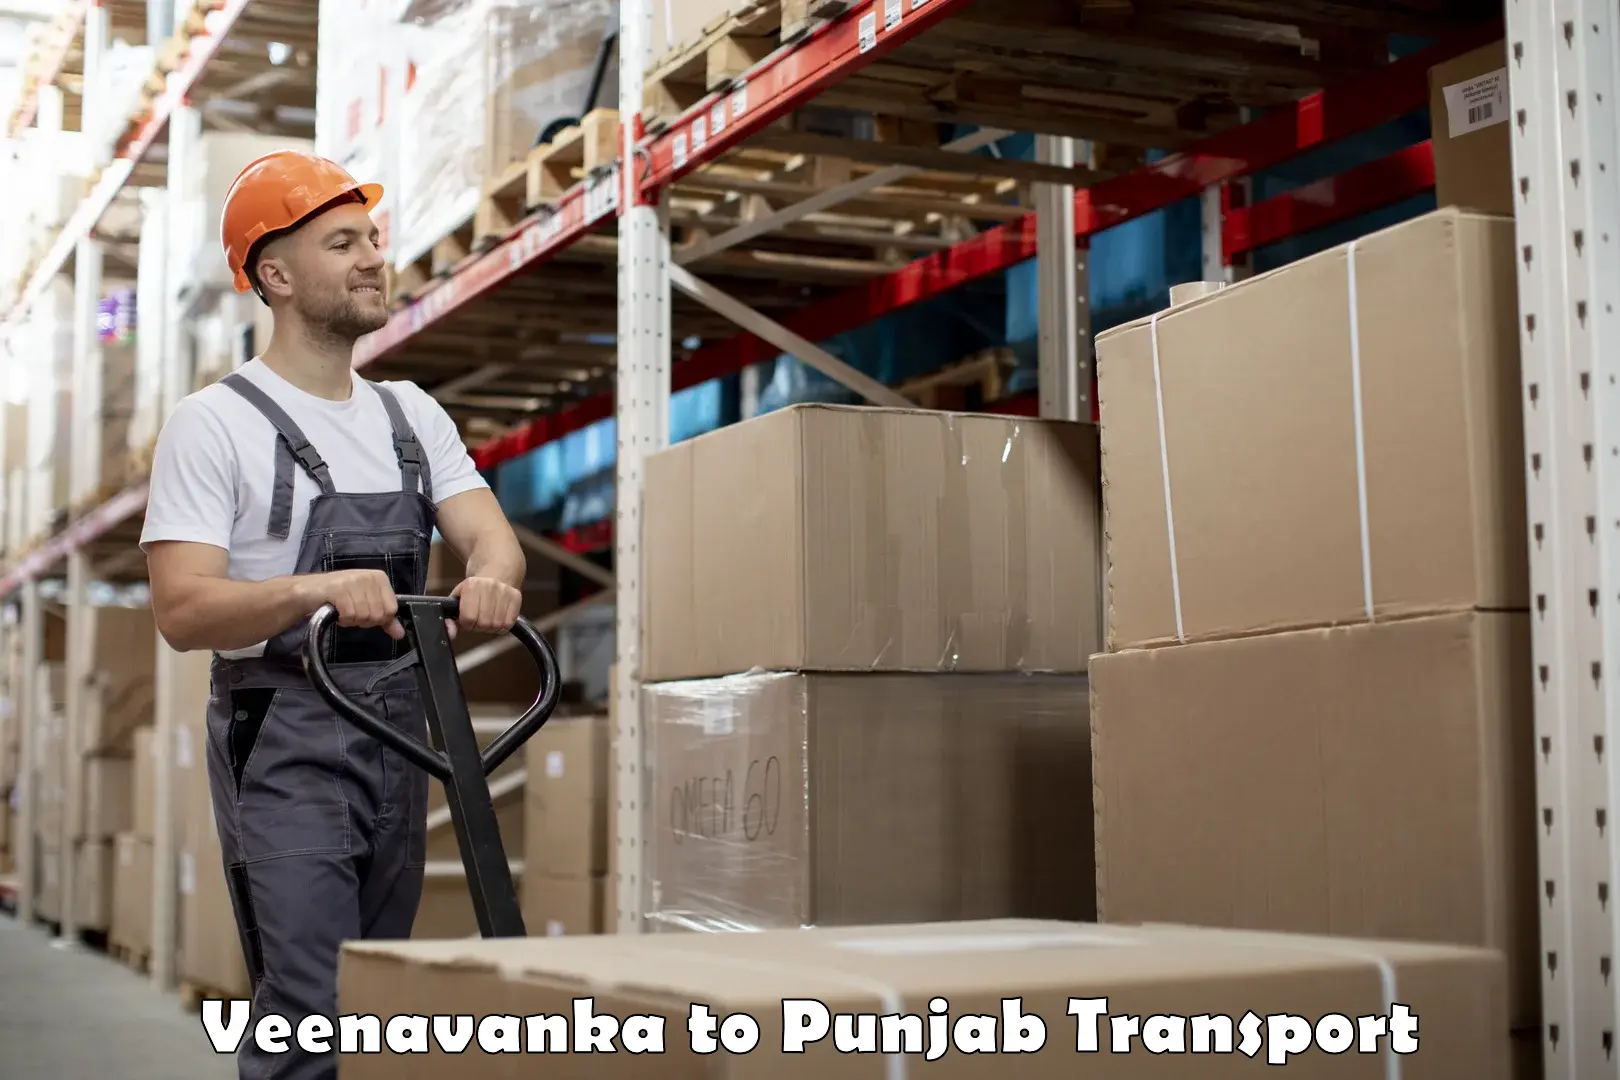 All India transport service Veenavanka to Muktsar